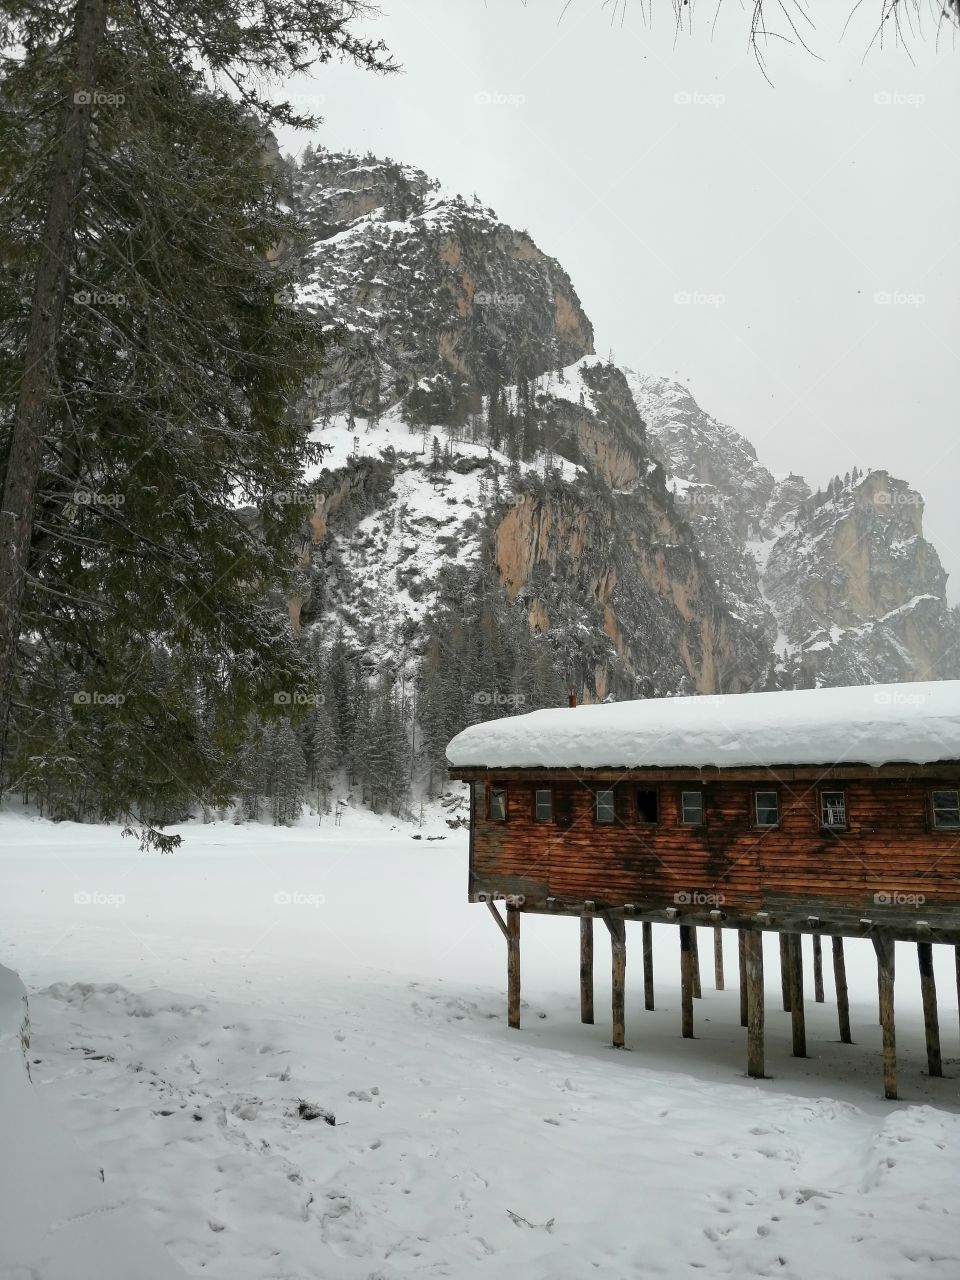 Frozen Braies Lake in Winter in South Tyrol.